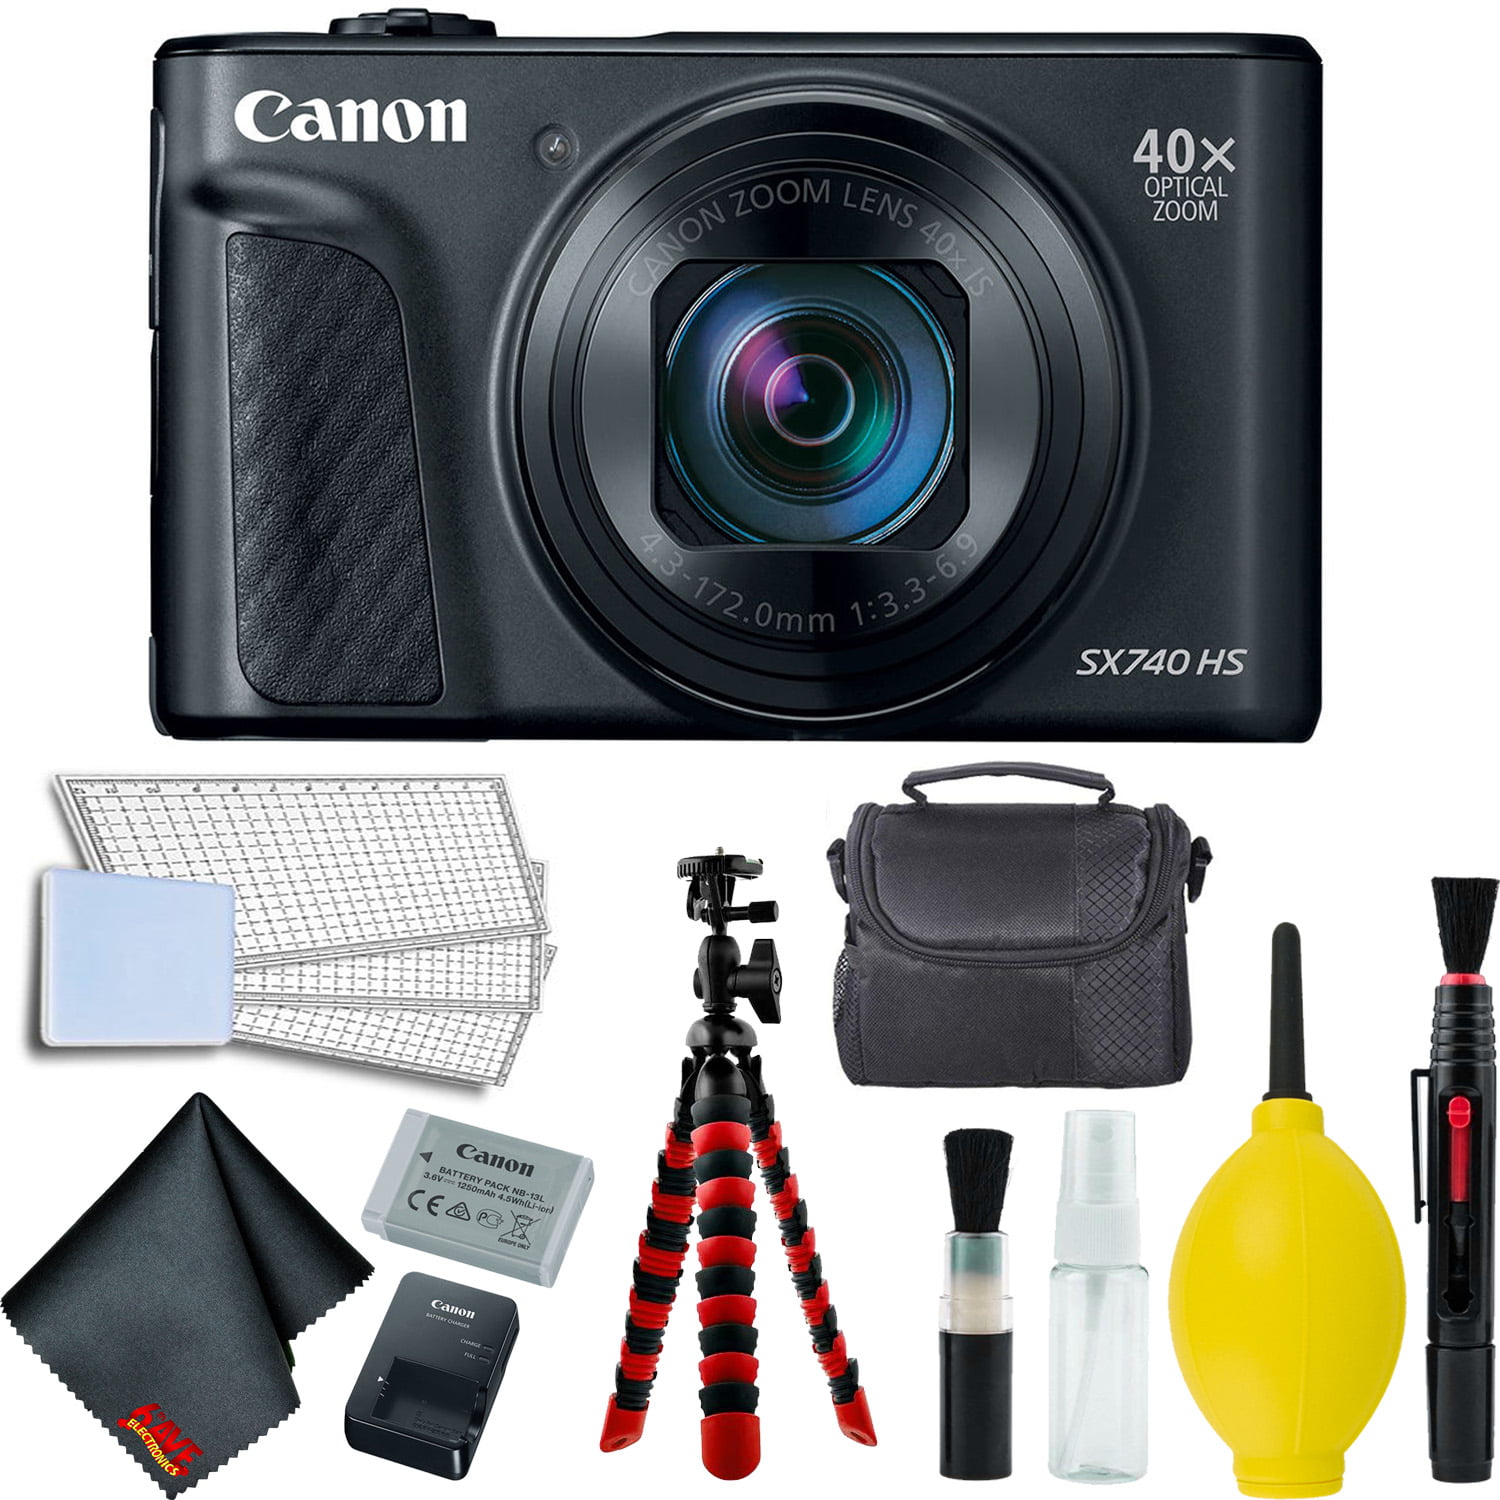 Verhoog jezelf Maken Woud Canon PowerShot SX740 HS Digital Camera (Black) Accessory Bundle - Intl  Model - Walmart.com